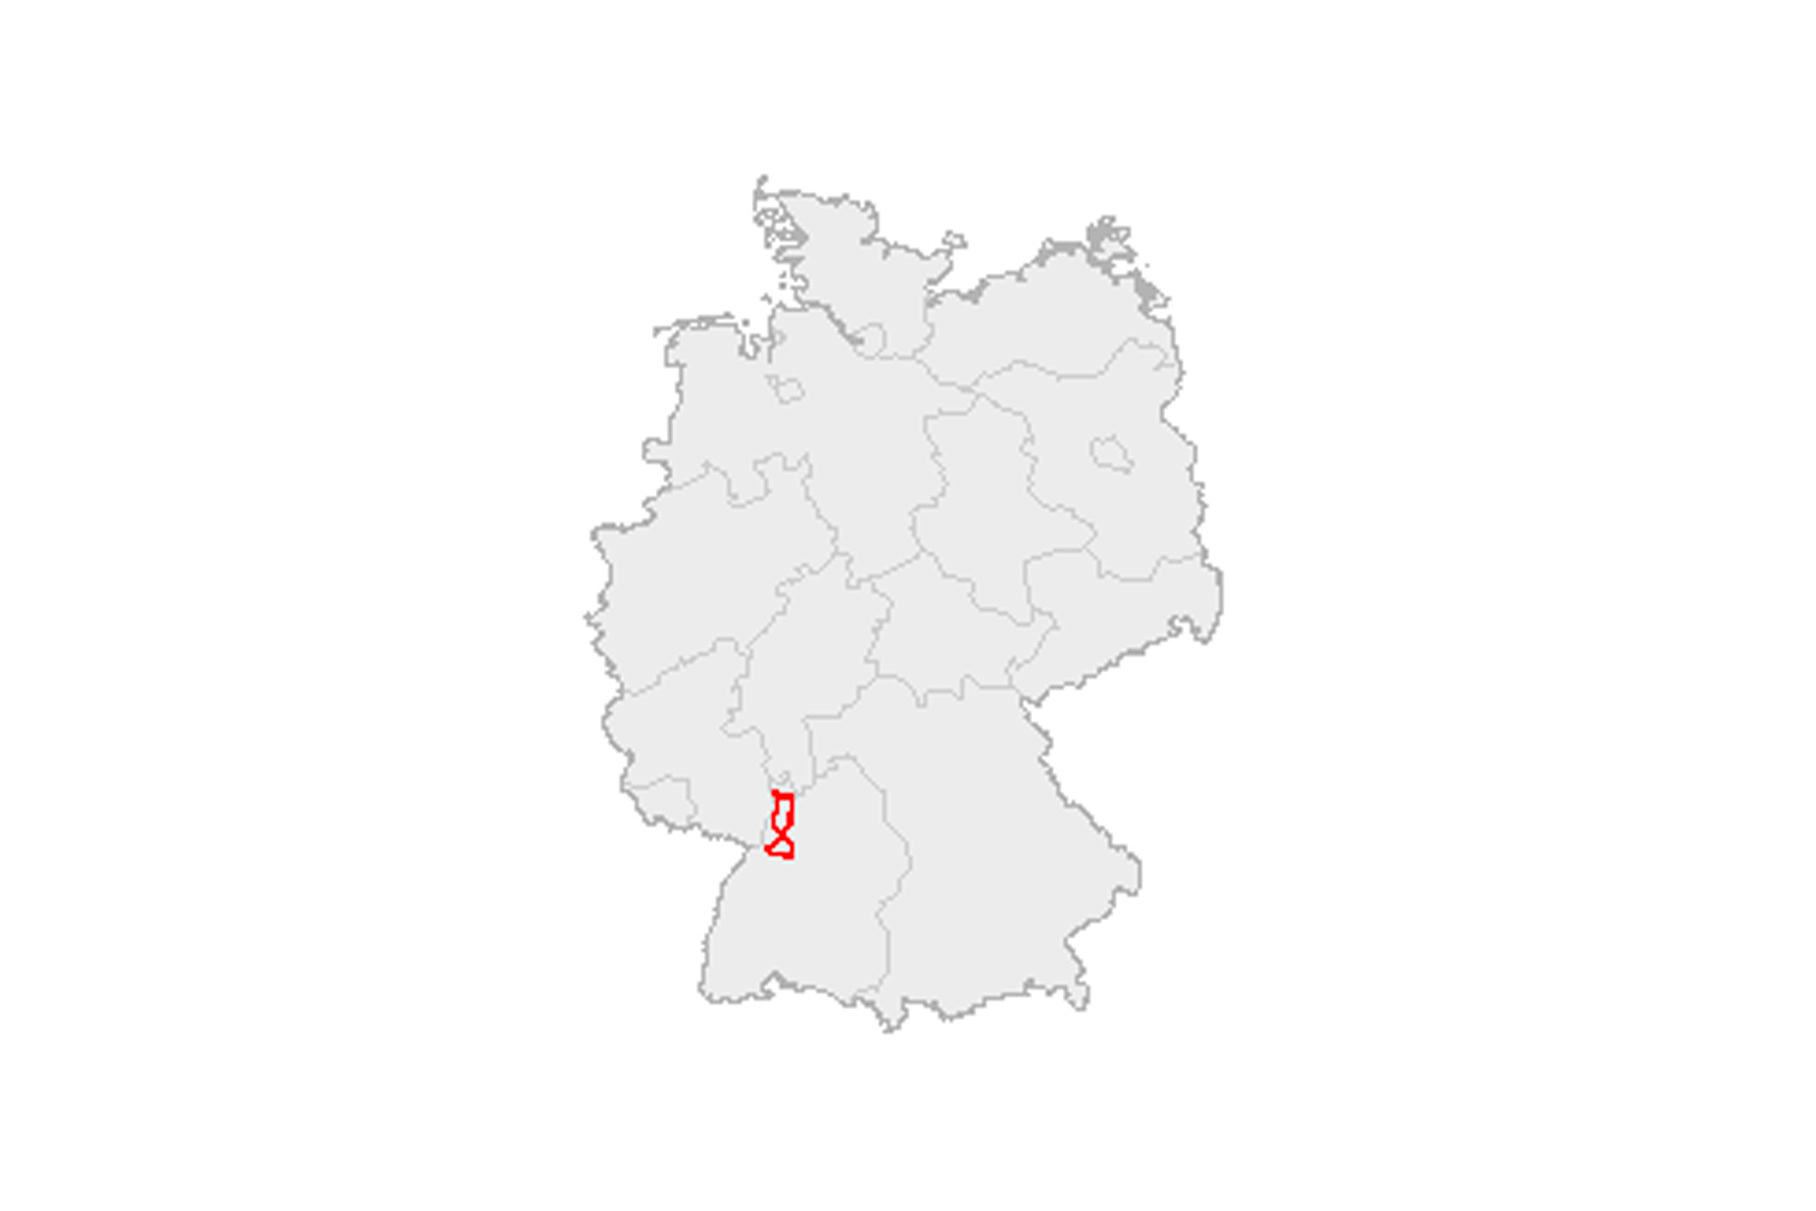 Вот так скромно выглядит путь Берты Бенц на карте Германии. Тем не менее, в конце XIX века это было целое путешествие